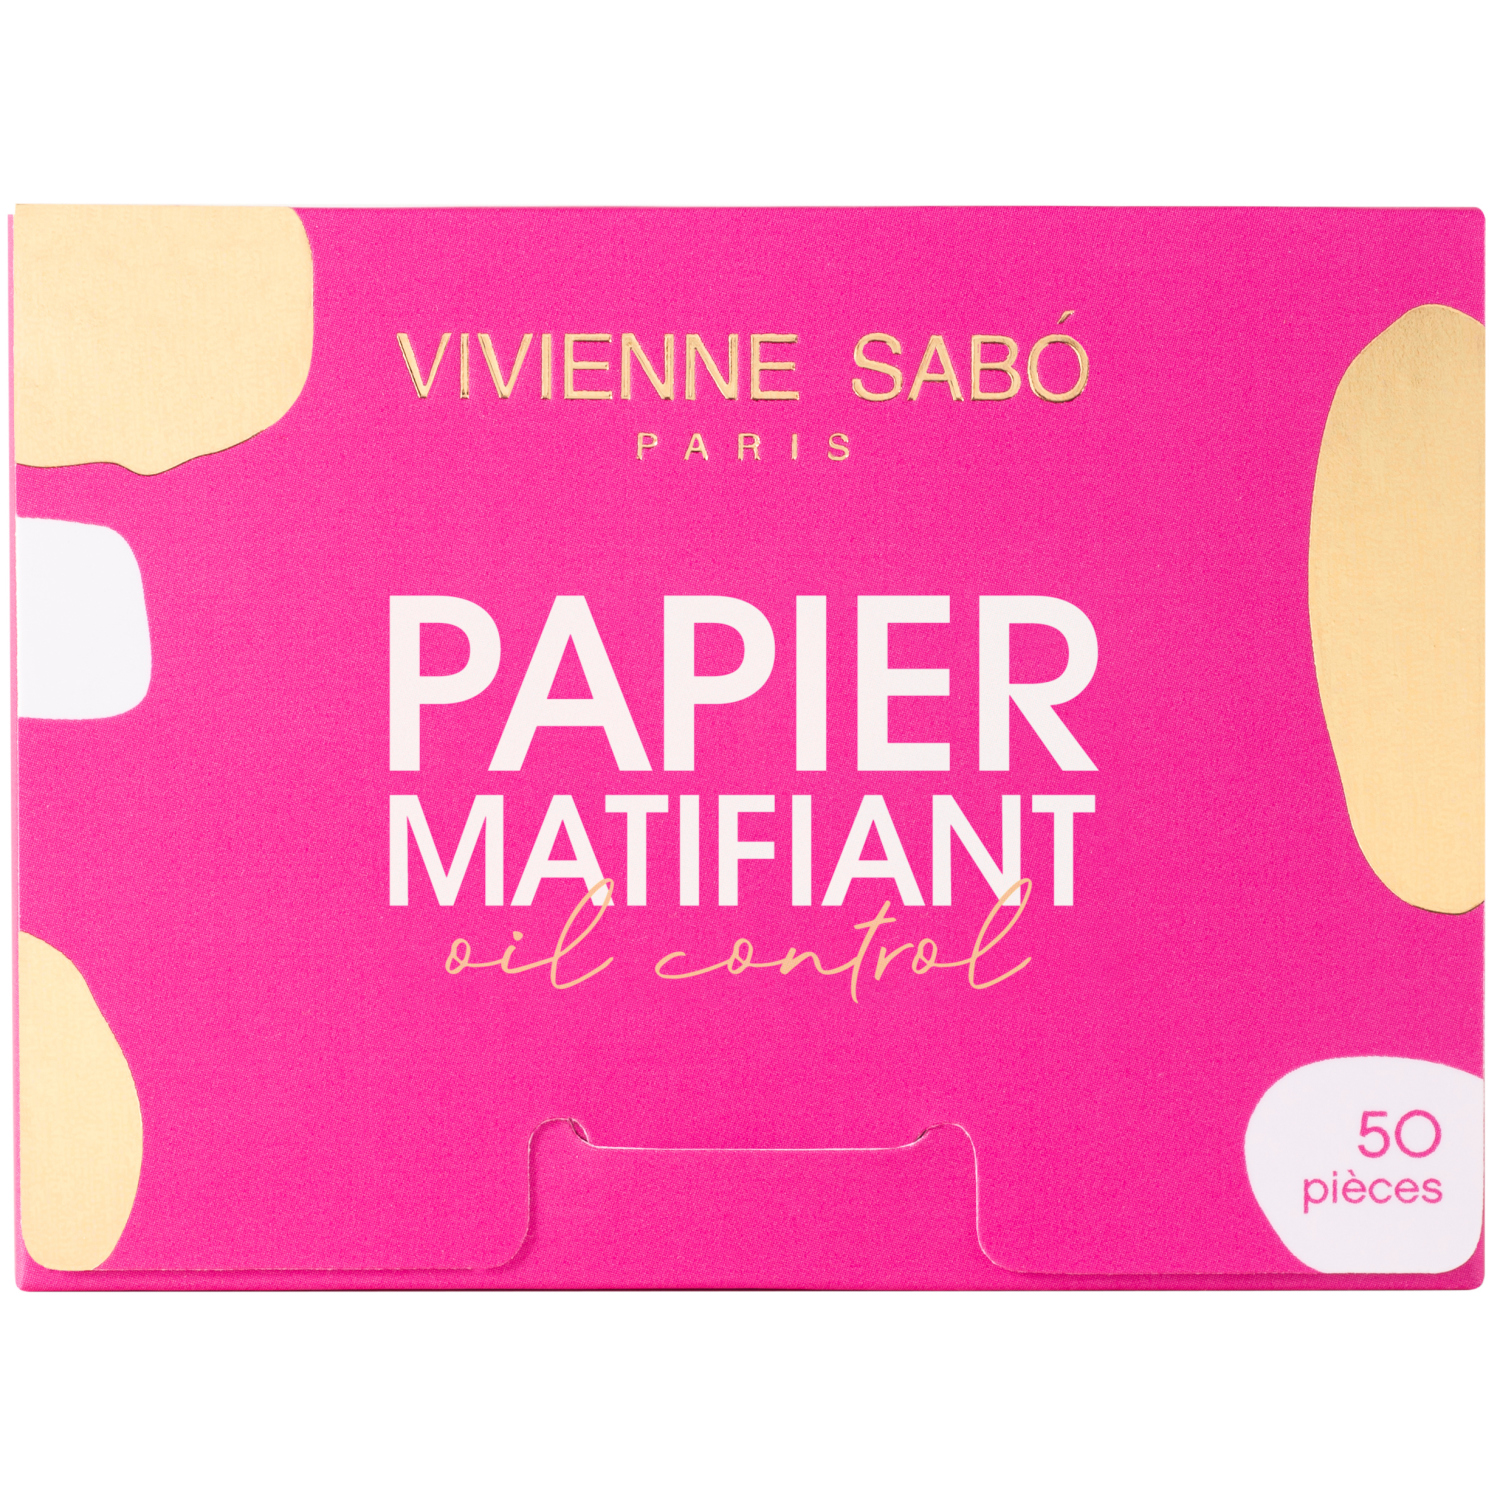 Матирующие салфетки Vivienne Sabo Papier Matifiant, моментальное удаление жирного блеска, прозрачно-розоватые, 50шт. матирующие салфетки для лица